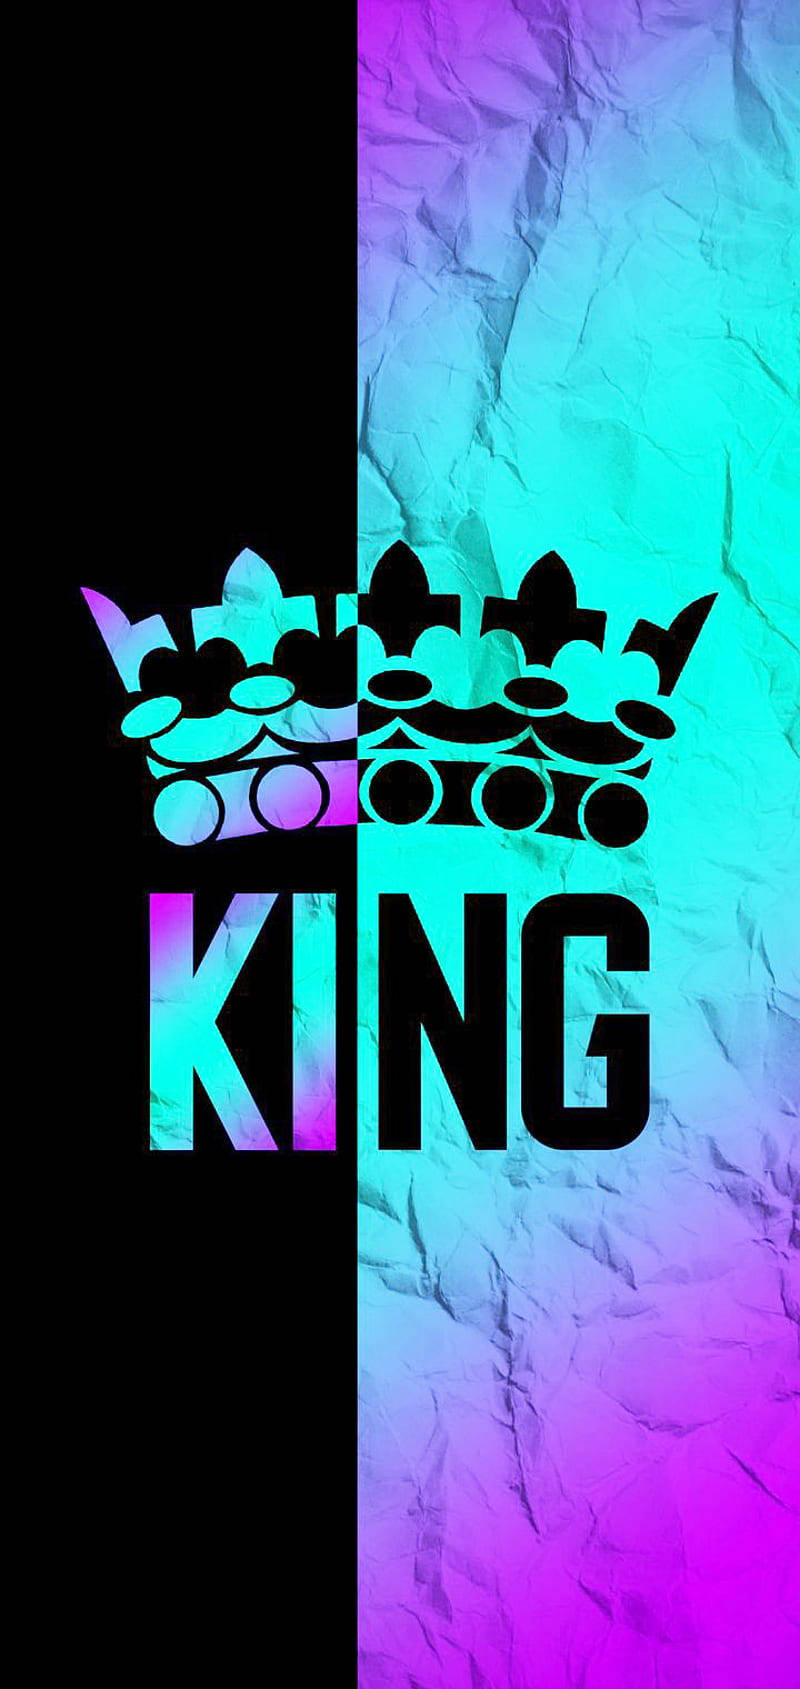 King of kings logo HD wallpapers | Pxfuel